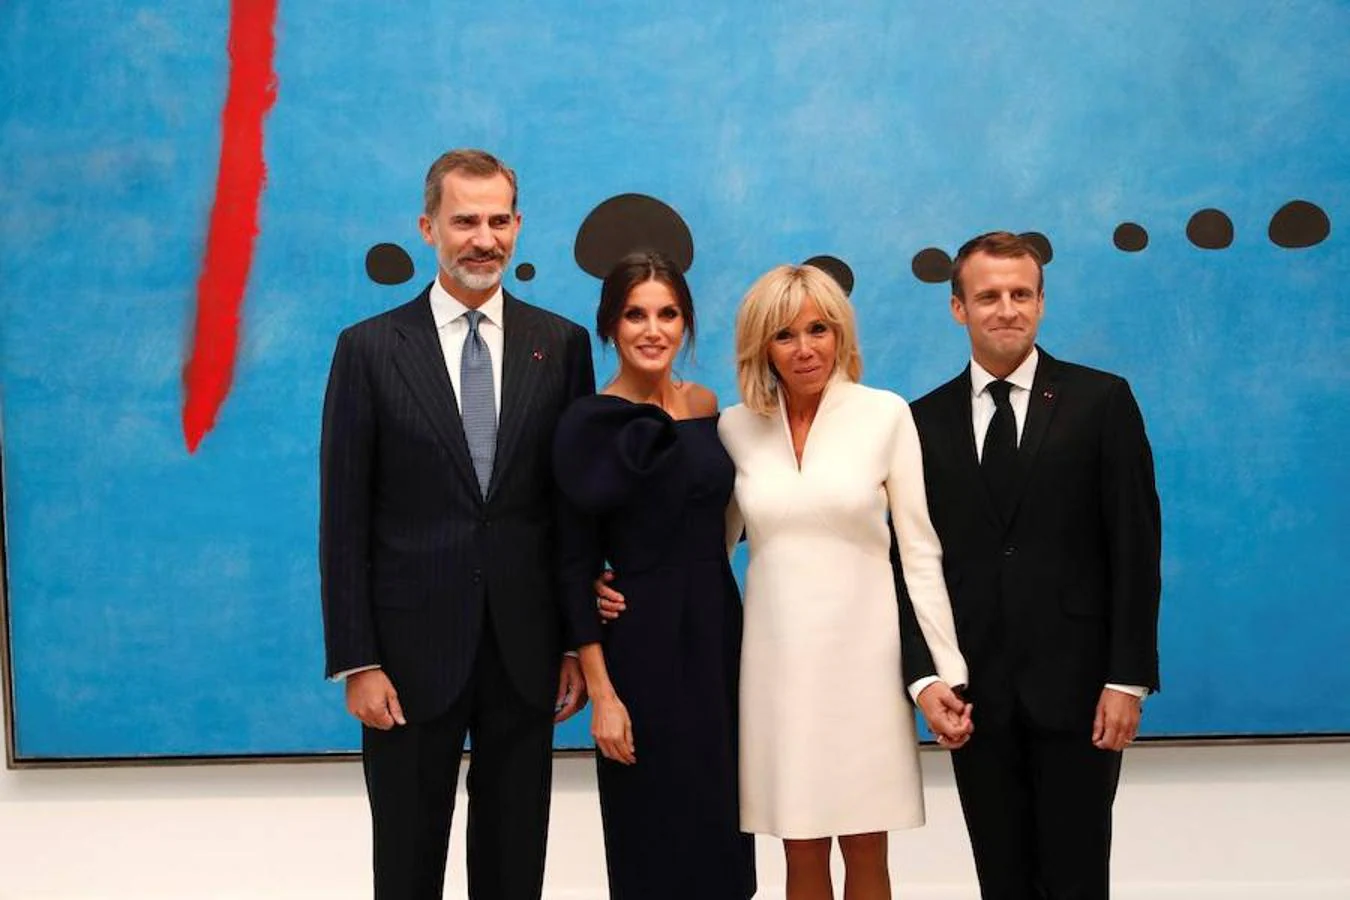 La retrospectiva de Miró brinda una buena ocasión de escenificar, una vez más, la cercanía de las relaciones entre España y Francia, explican fuentes implicadas en la organización de la visita.. 